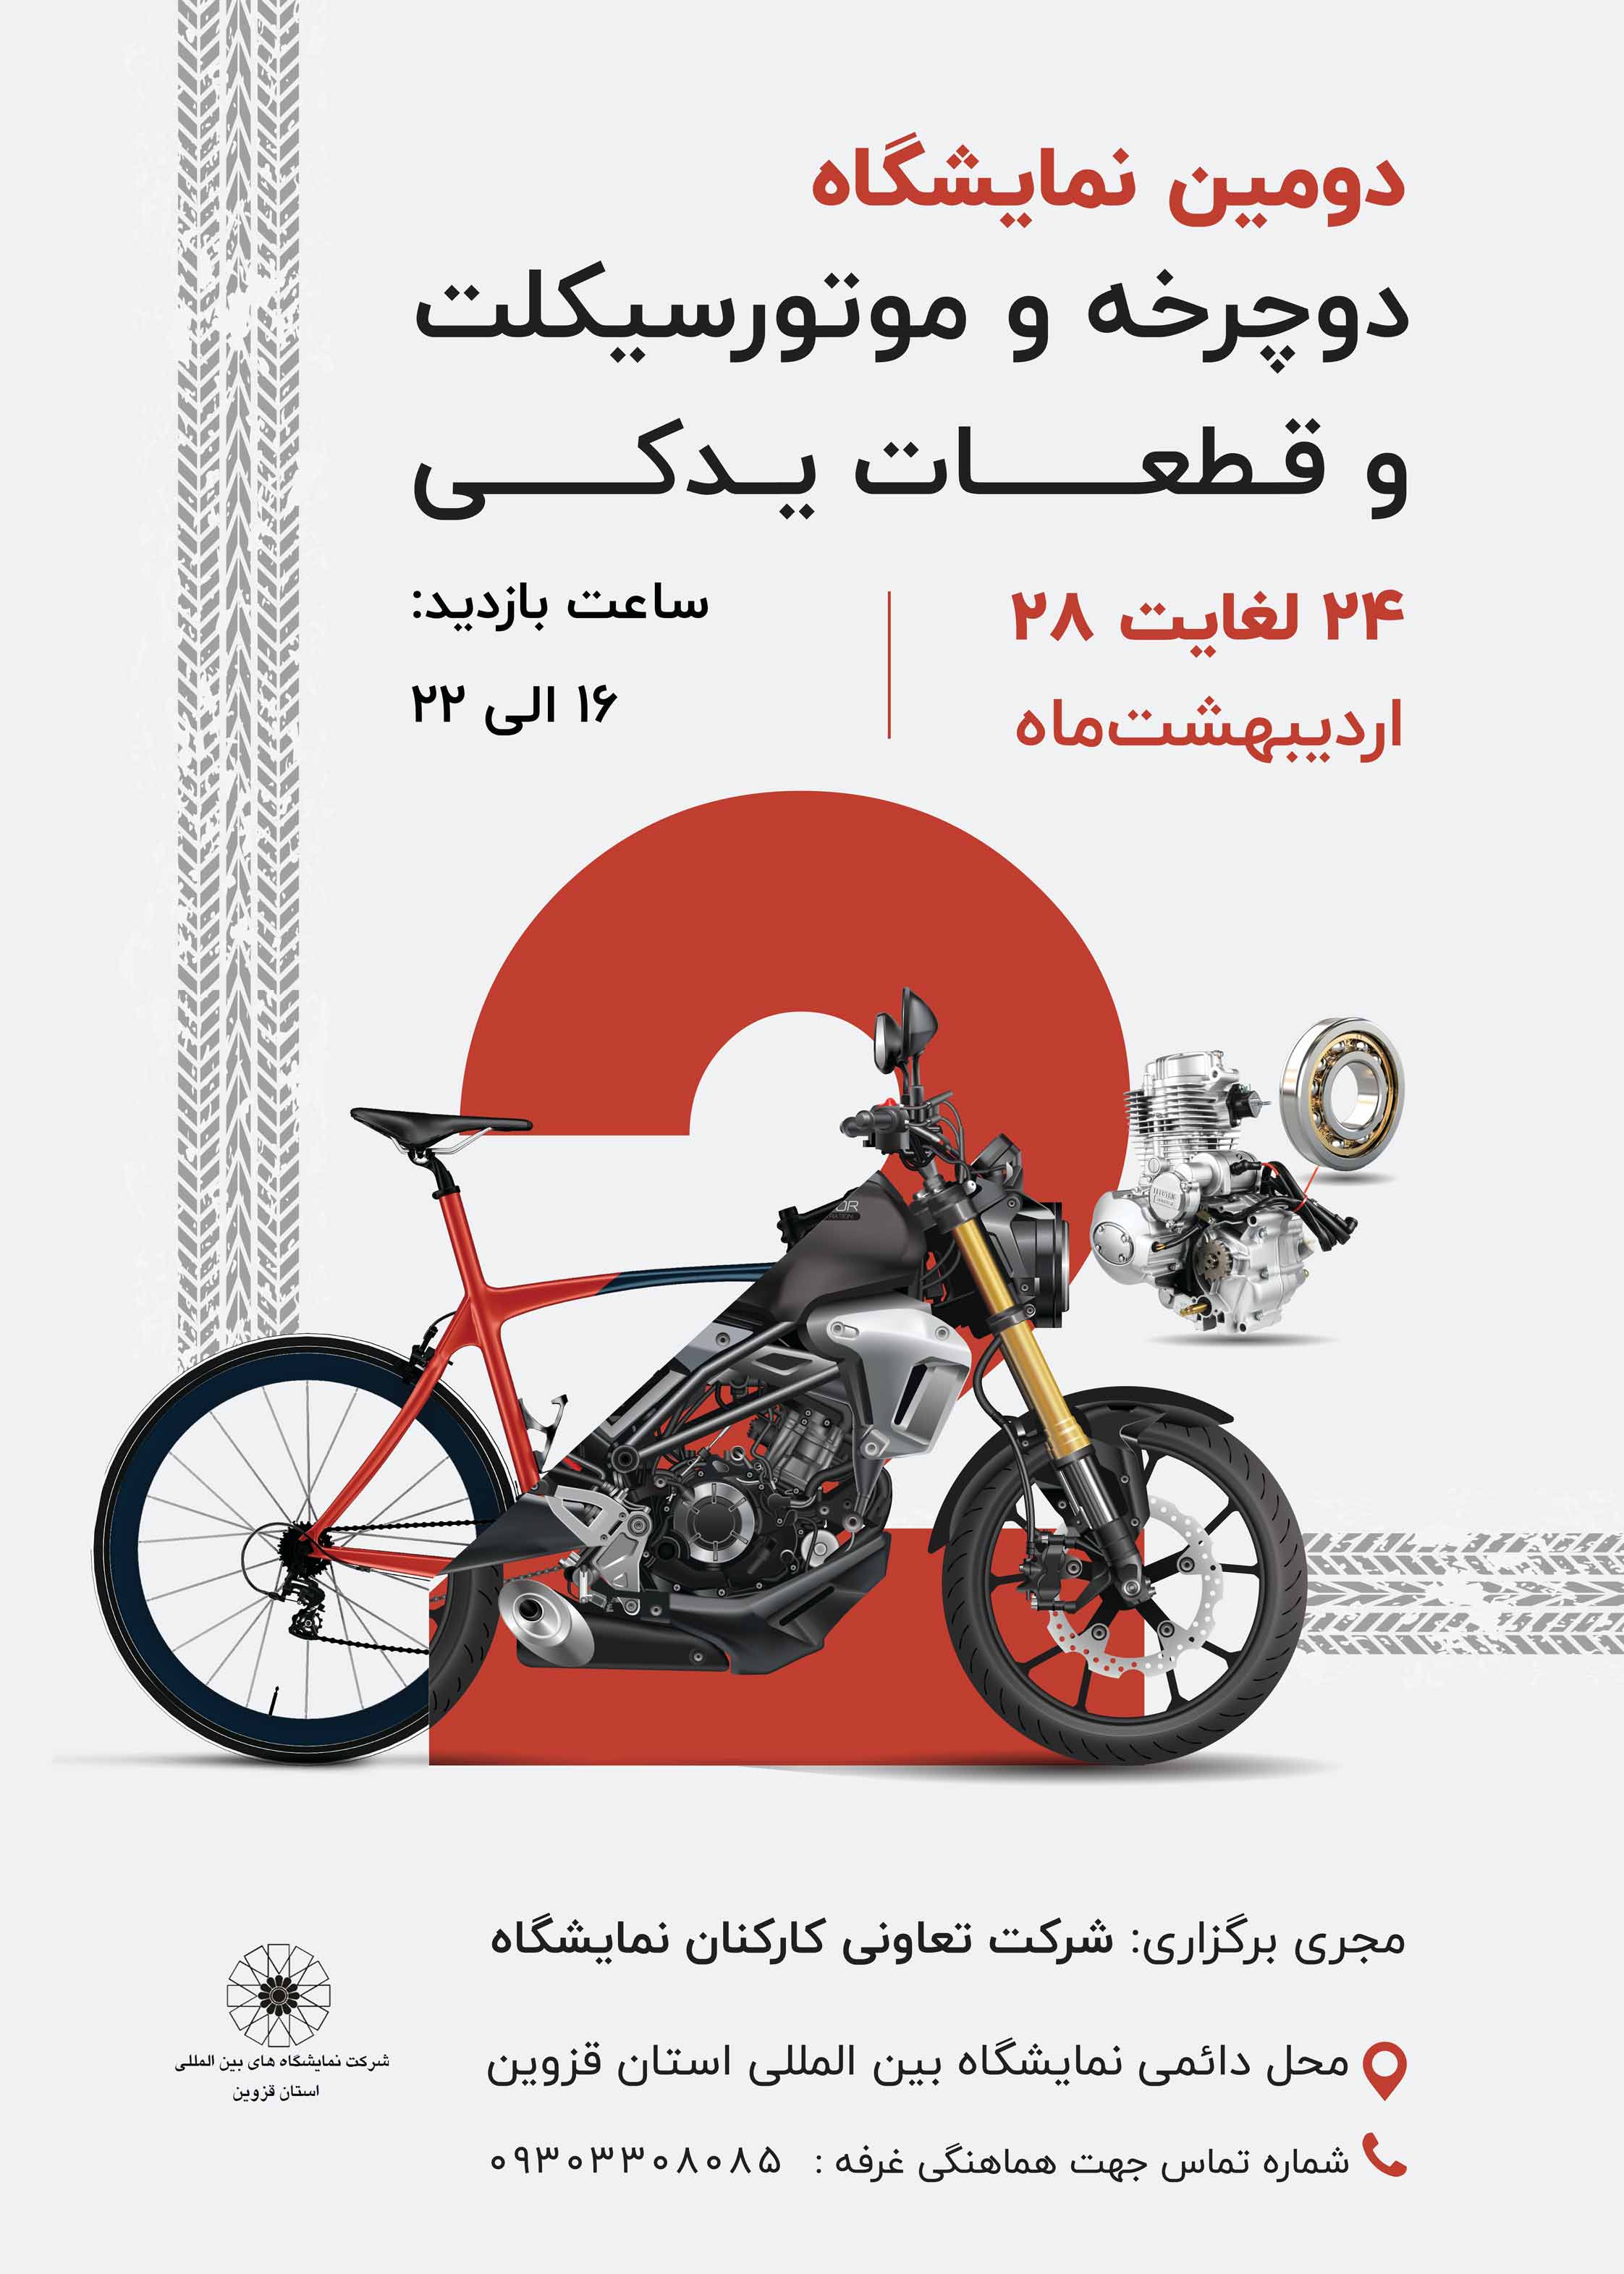 دومین نمایشگاه تخصصی دوچرخه، موتور سیکلت و قطعات یدکی 